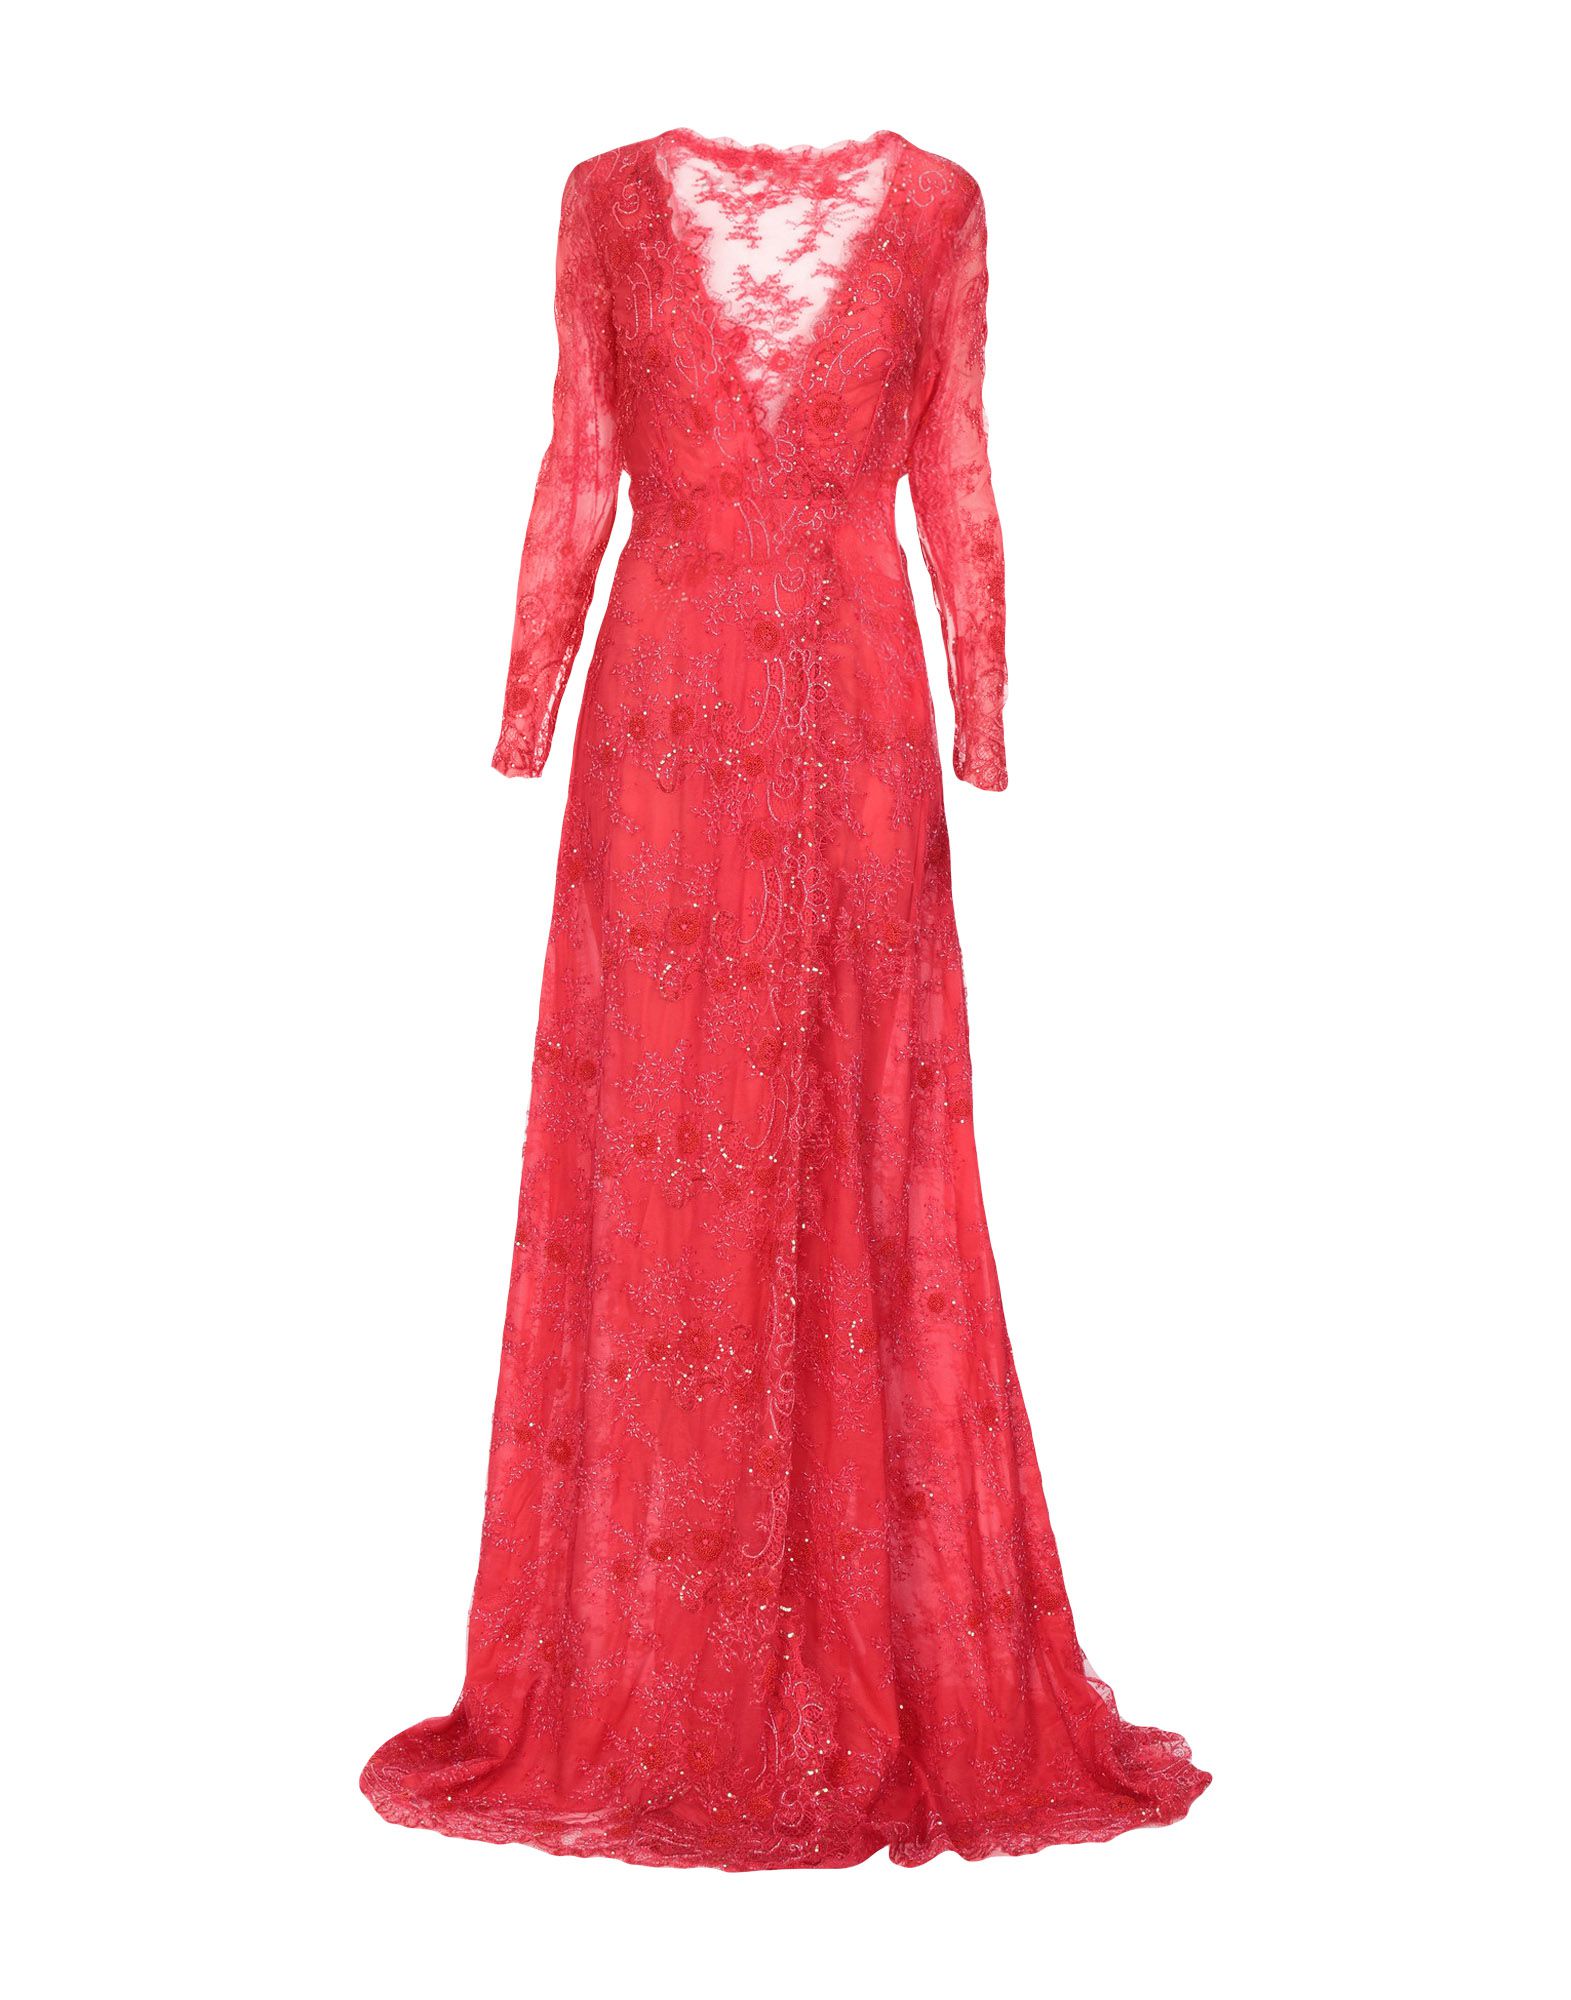 Длинное платье  - Бежевый,Красный цвет